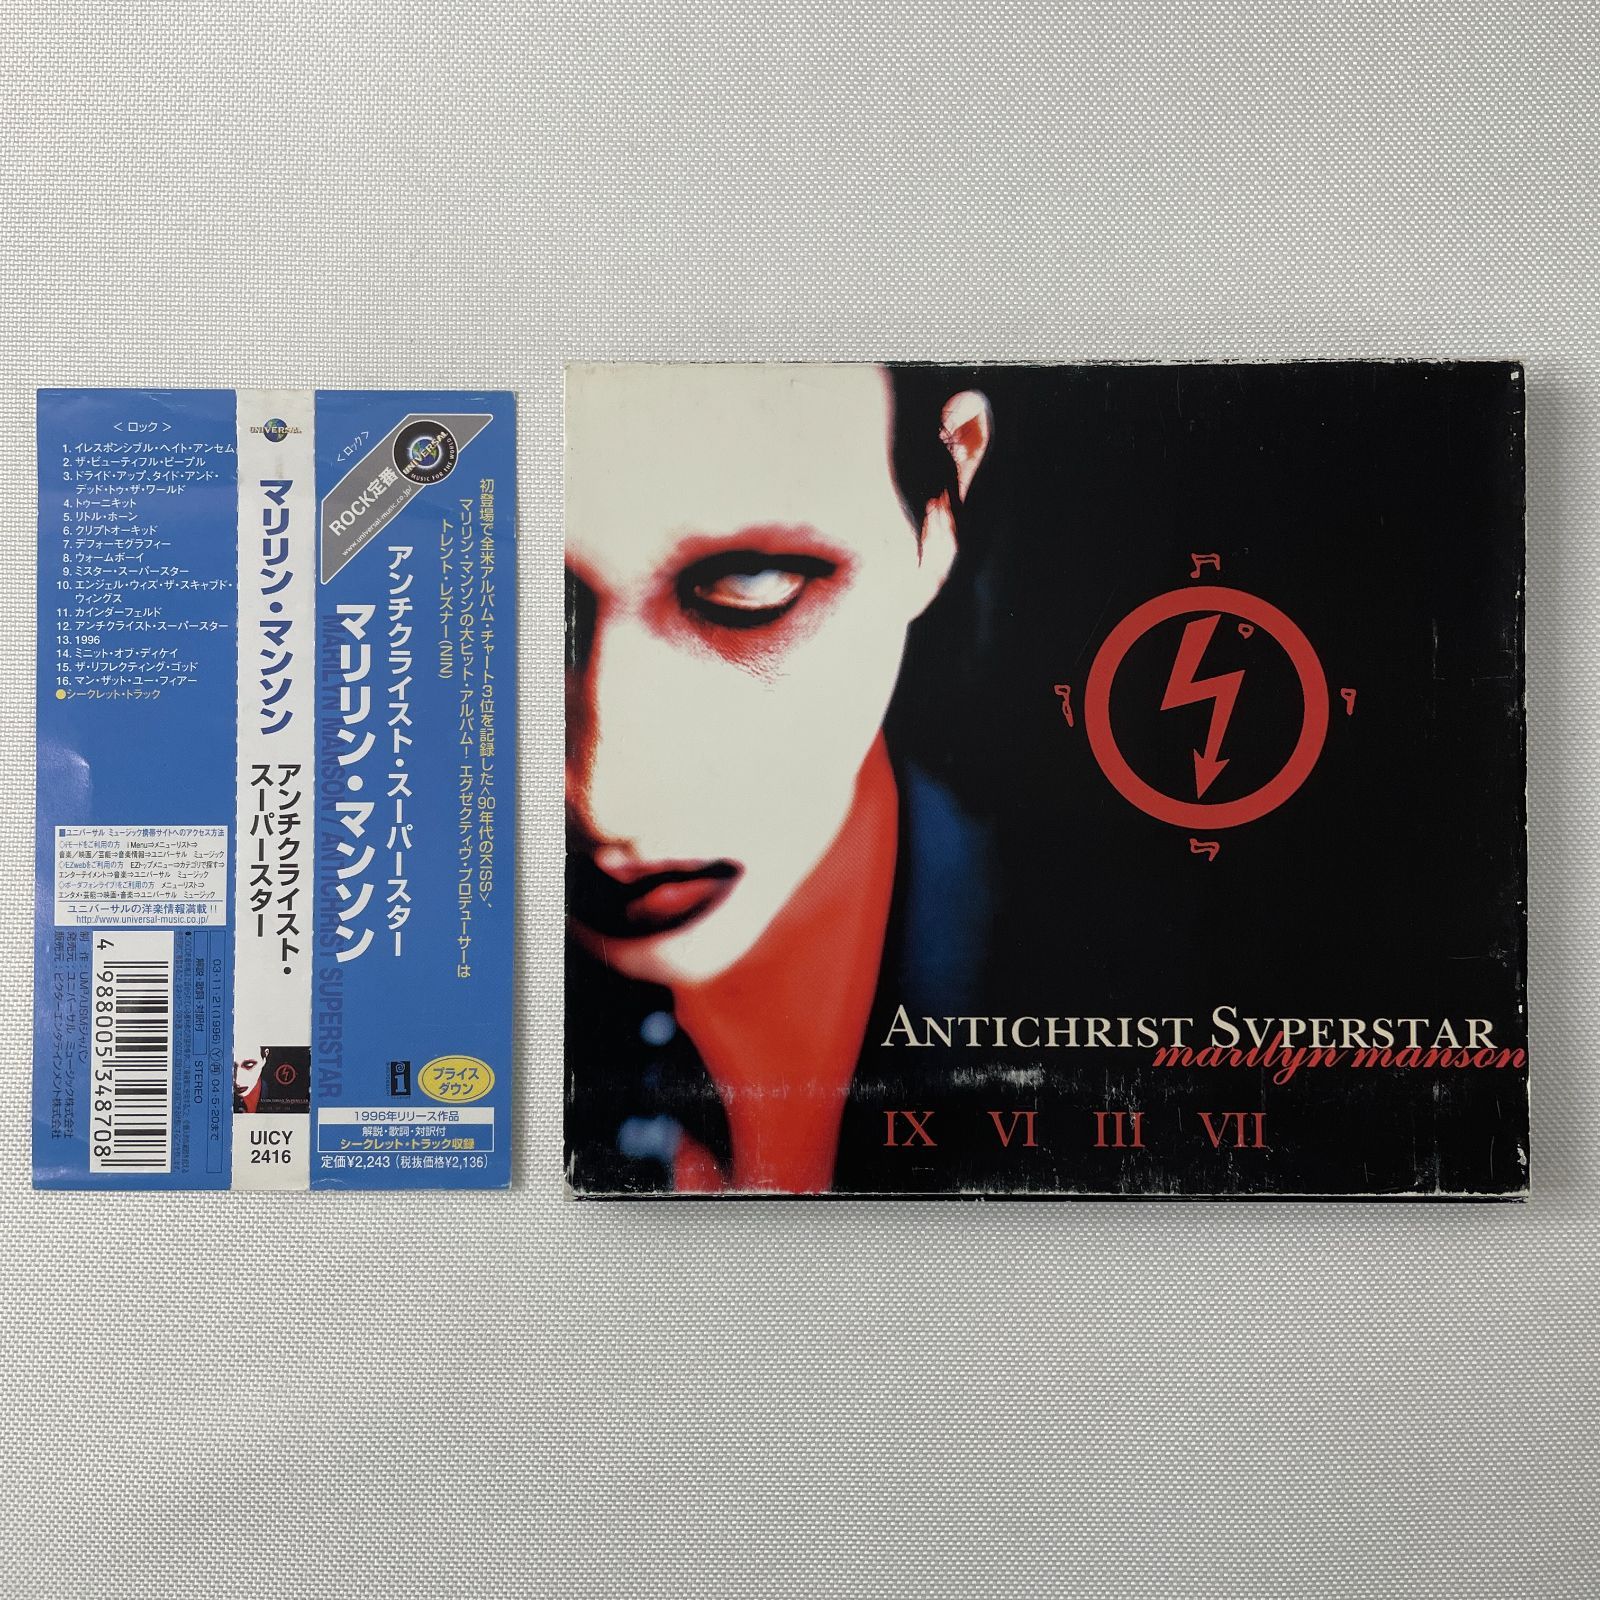 マリリン・マンソン – アンチクライスト・スーパースター】CD 帯あり 日本盤 Marilyn Manson Antichrist Superstar  再生確認済み - メルカリ